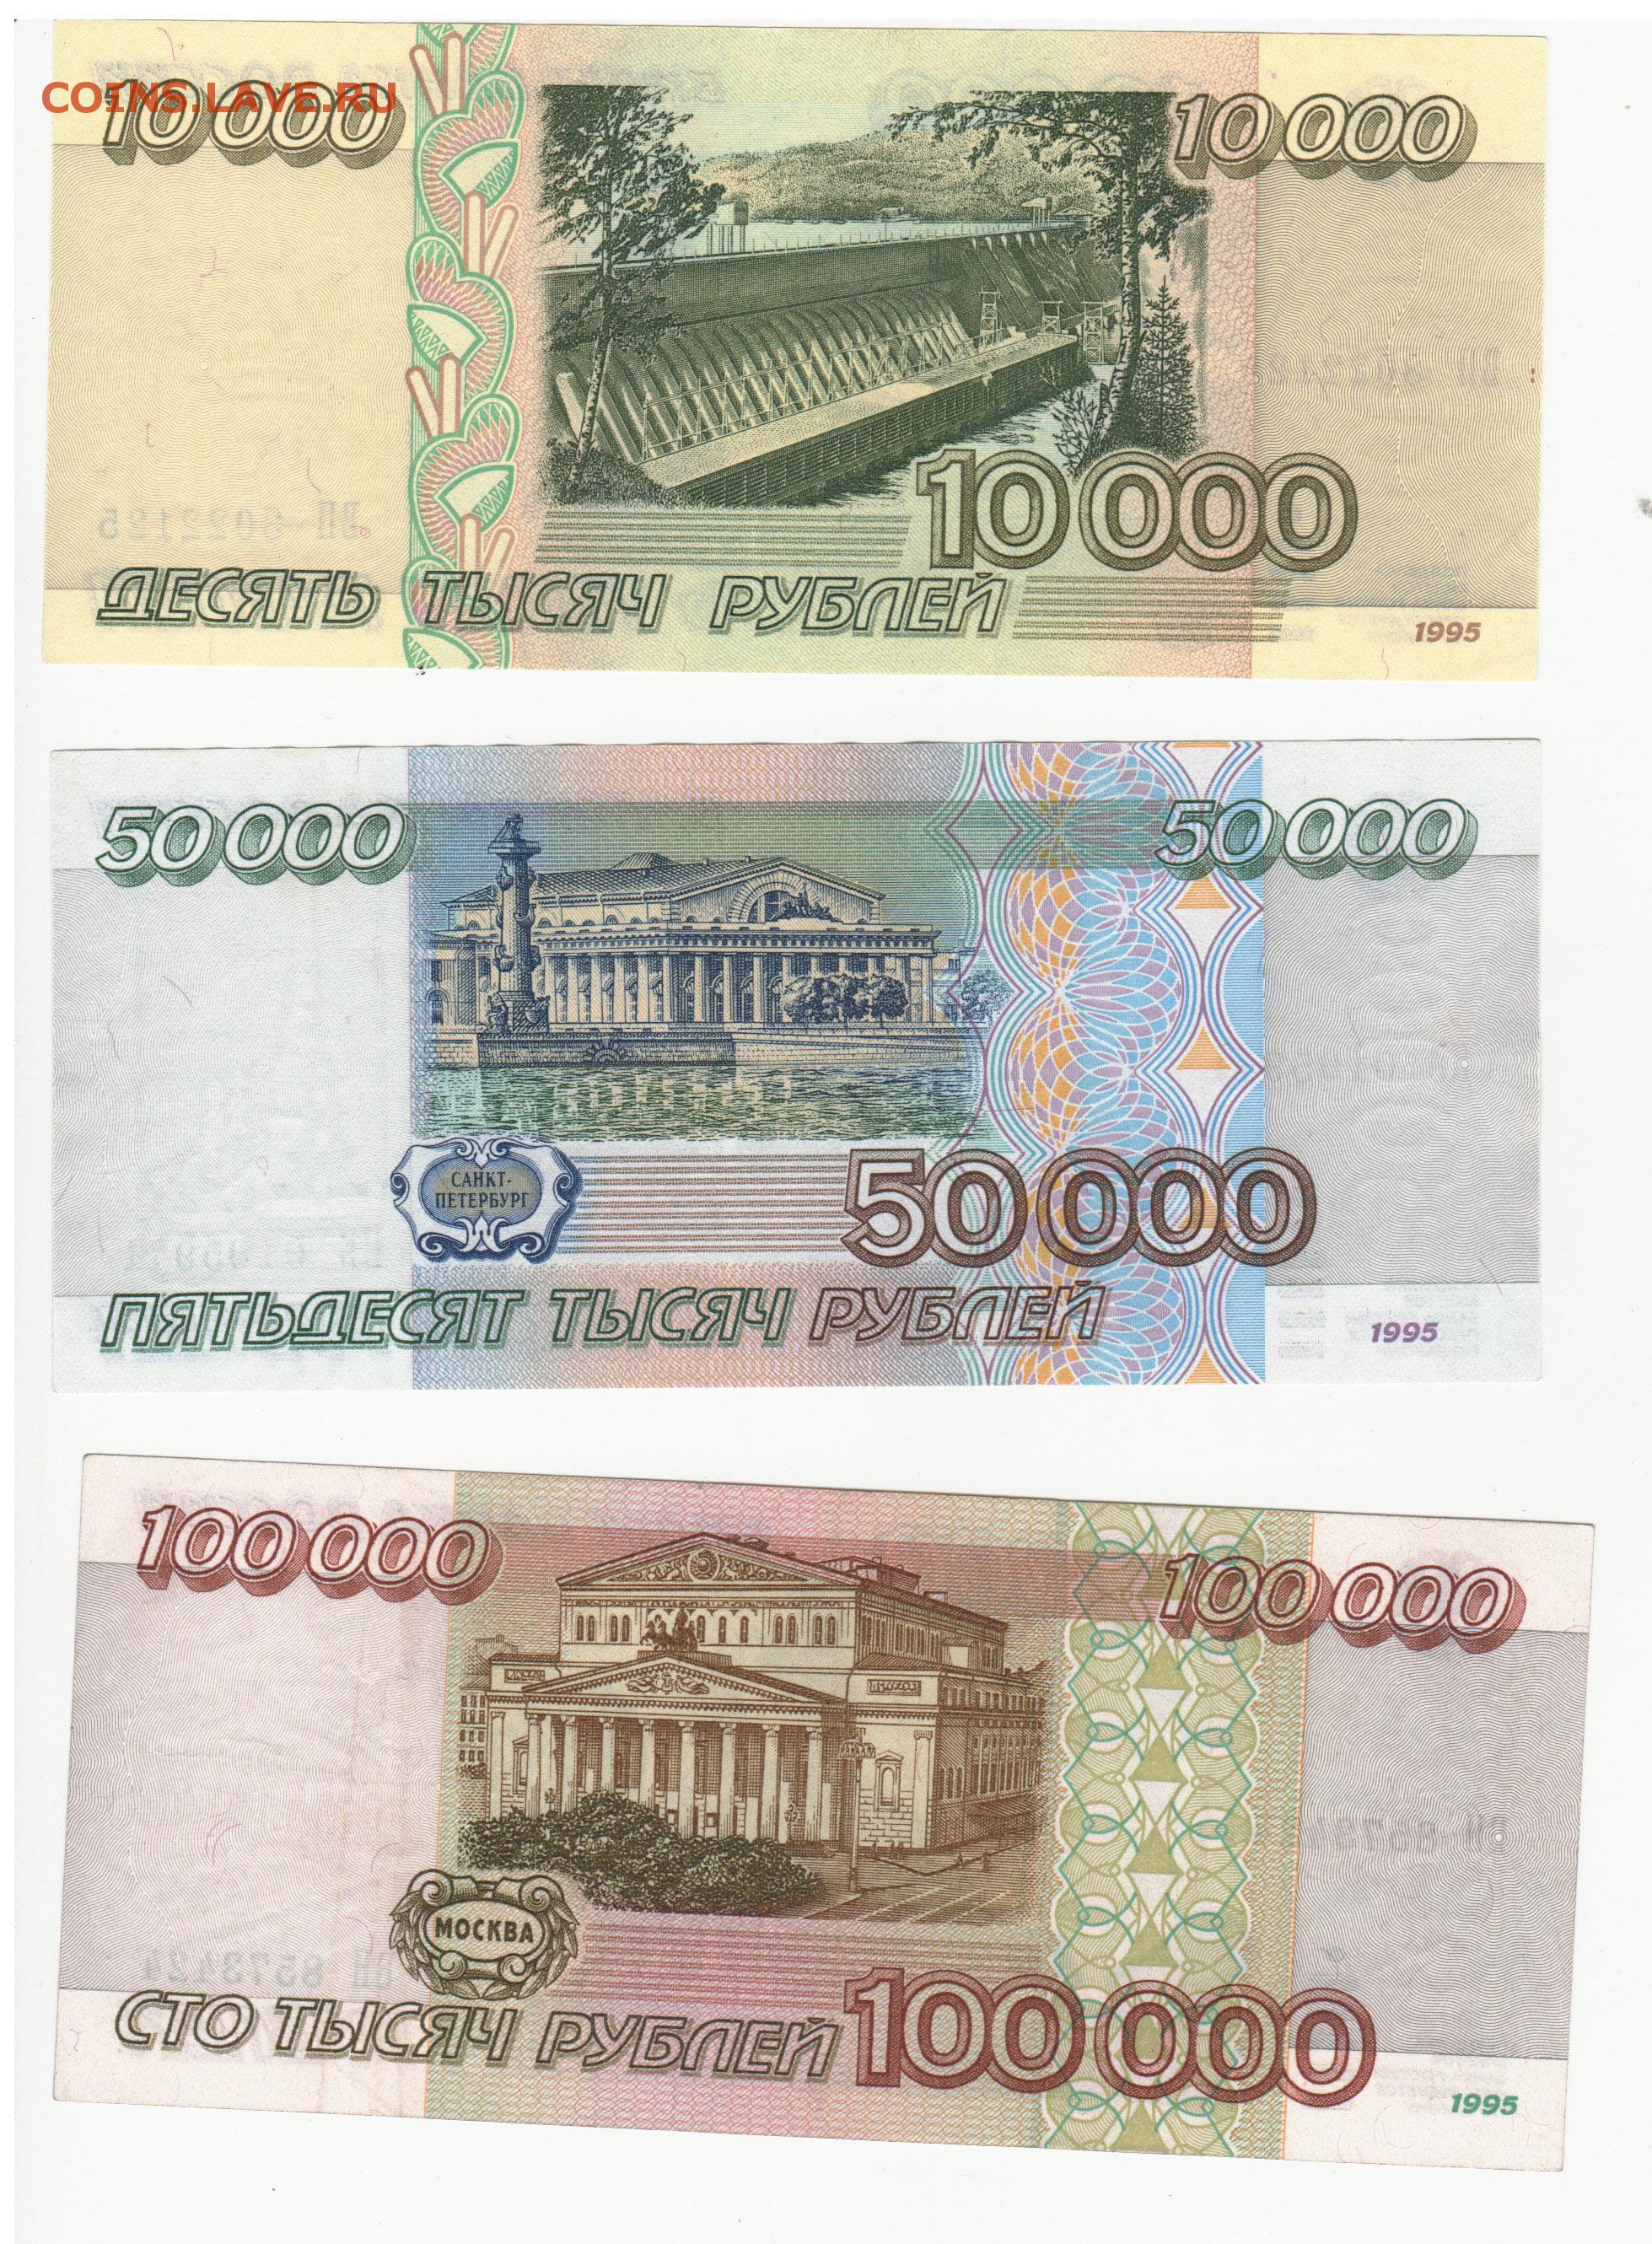 500000 4. 100000 Рублей 1995 года. Банкнота 100000 рублей 1995. 50 000 Рублей купюра 1995 года. СТО тысяч рублей купюра.